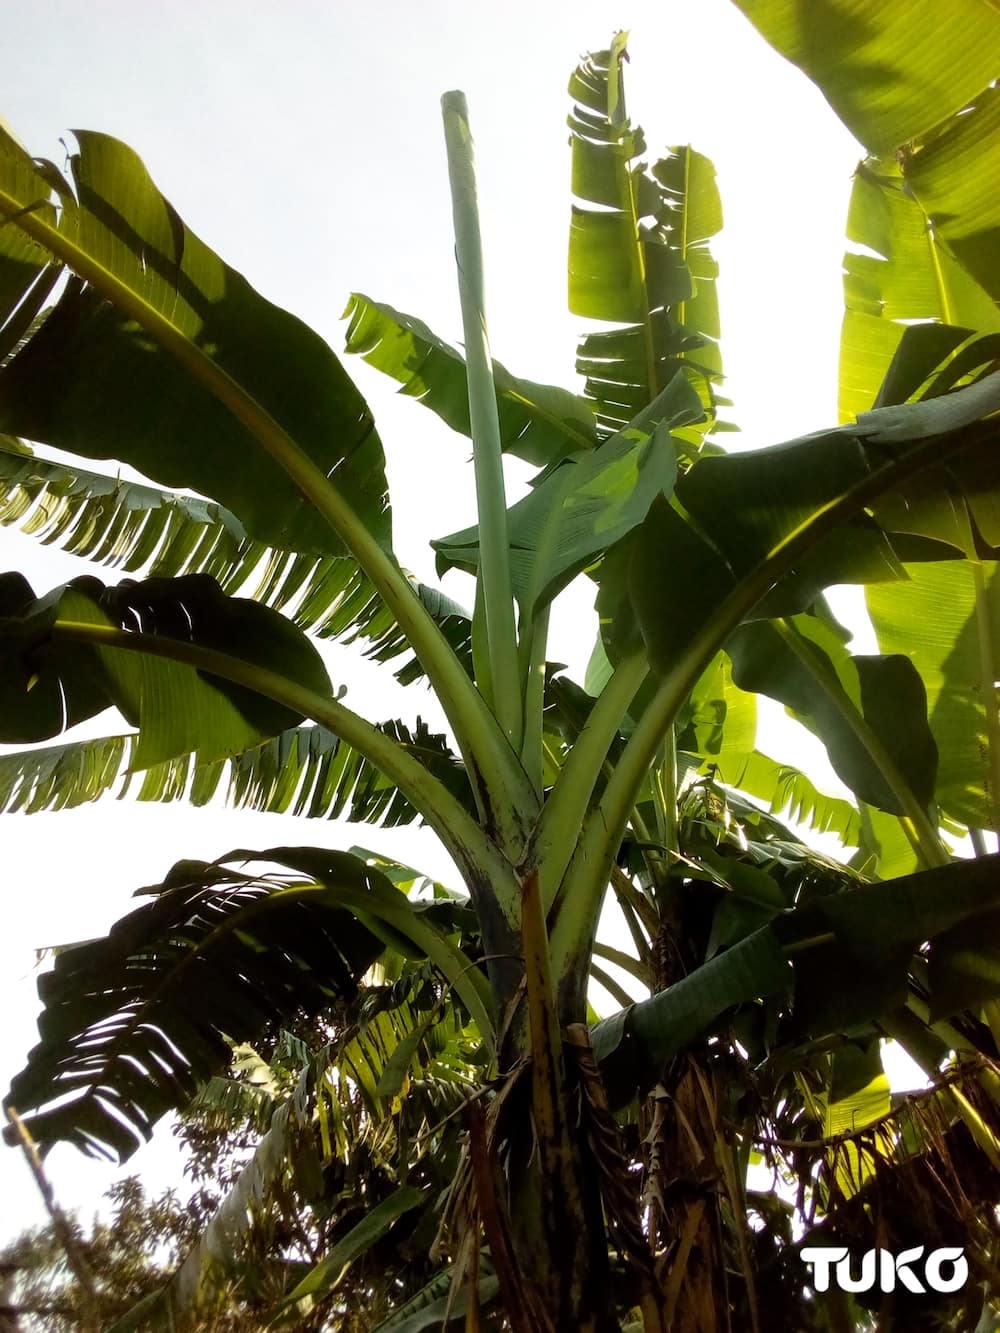 Banana leaves: Traditional ways Maragoli community nursed premature babies before innovation of incubators